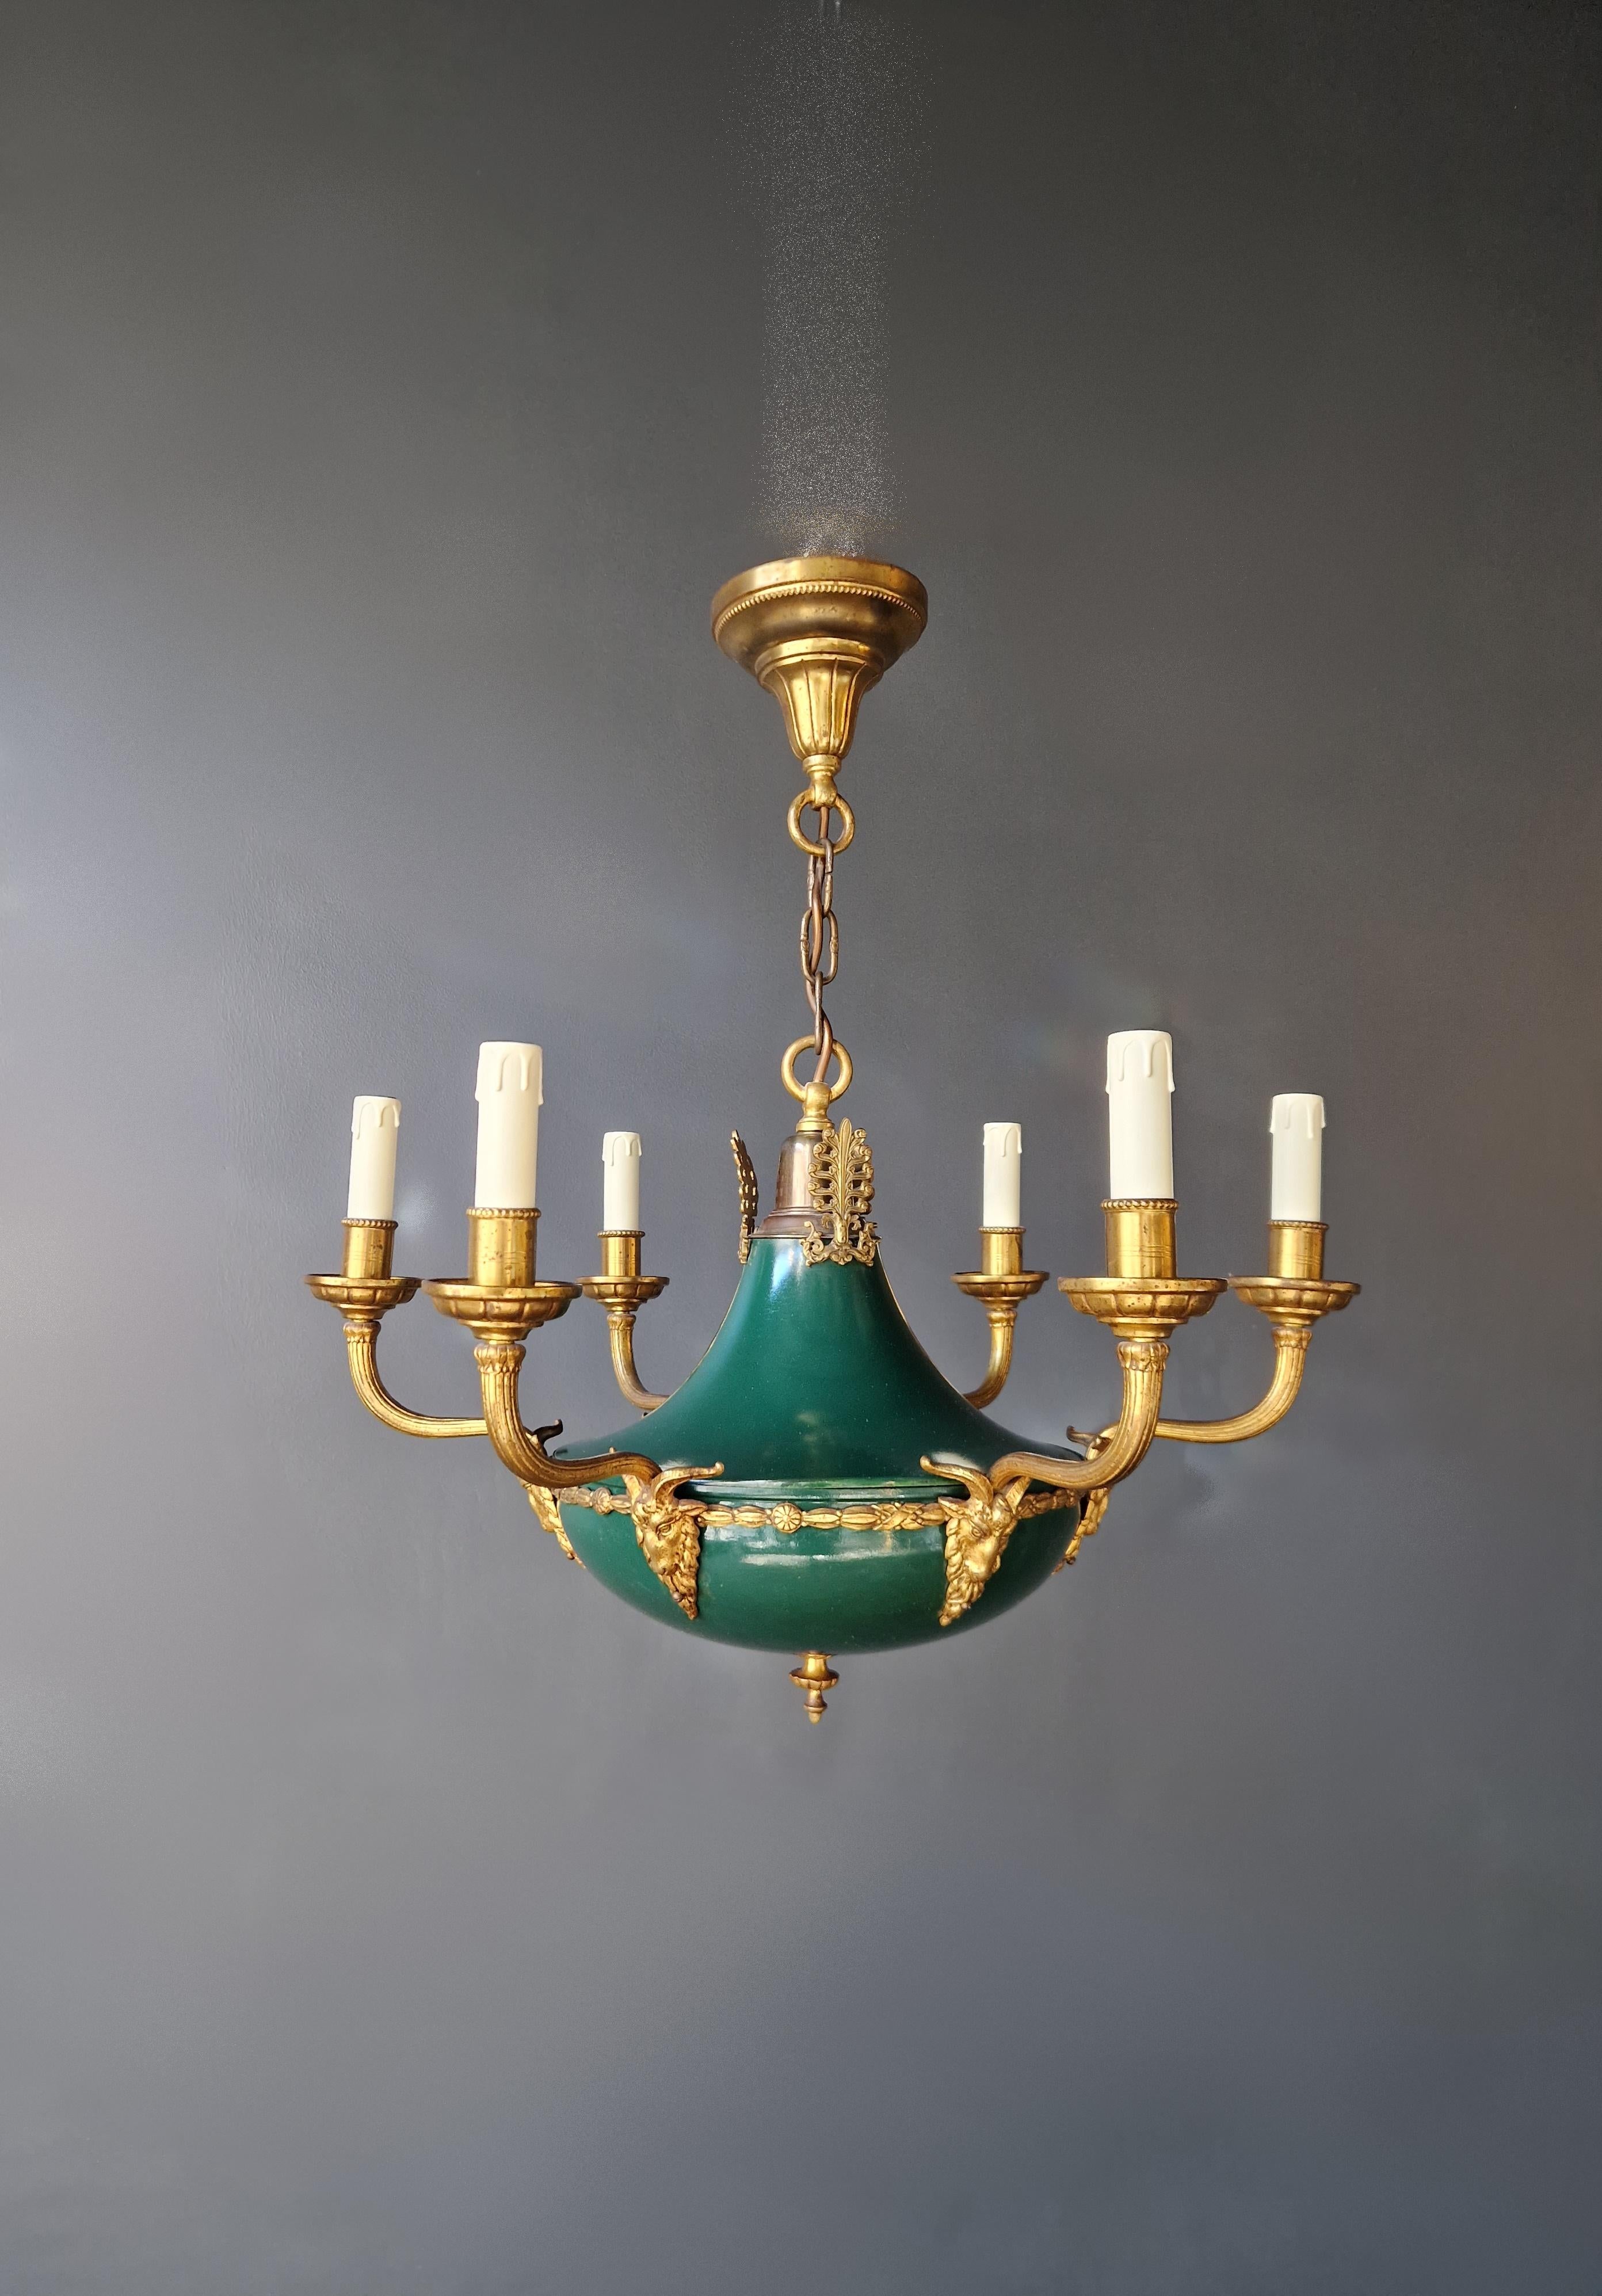 Nous vous présentons notre exquis lustre en laiton vert à patine Empire Lustre Néoclassique, un bel exemple de bronze doré et de bronze patiné de style Louis XVI allemand ancien.

Ce lustre a fait l'objet d'une restauration méticuleuse, le câblage